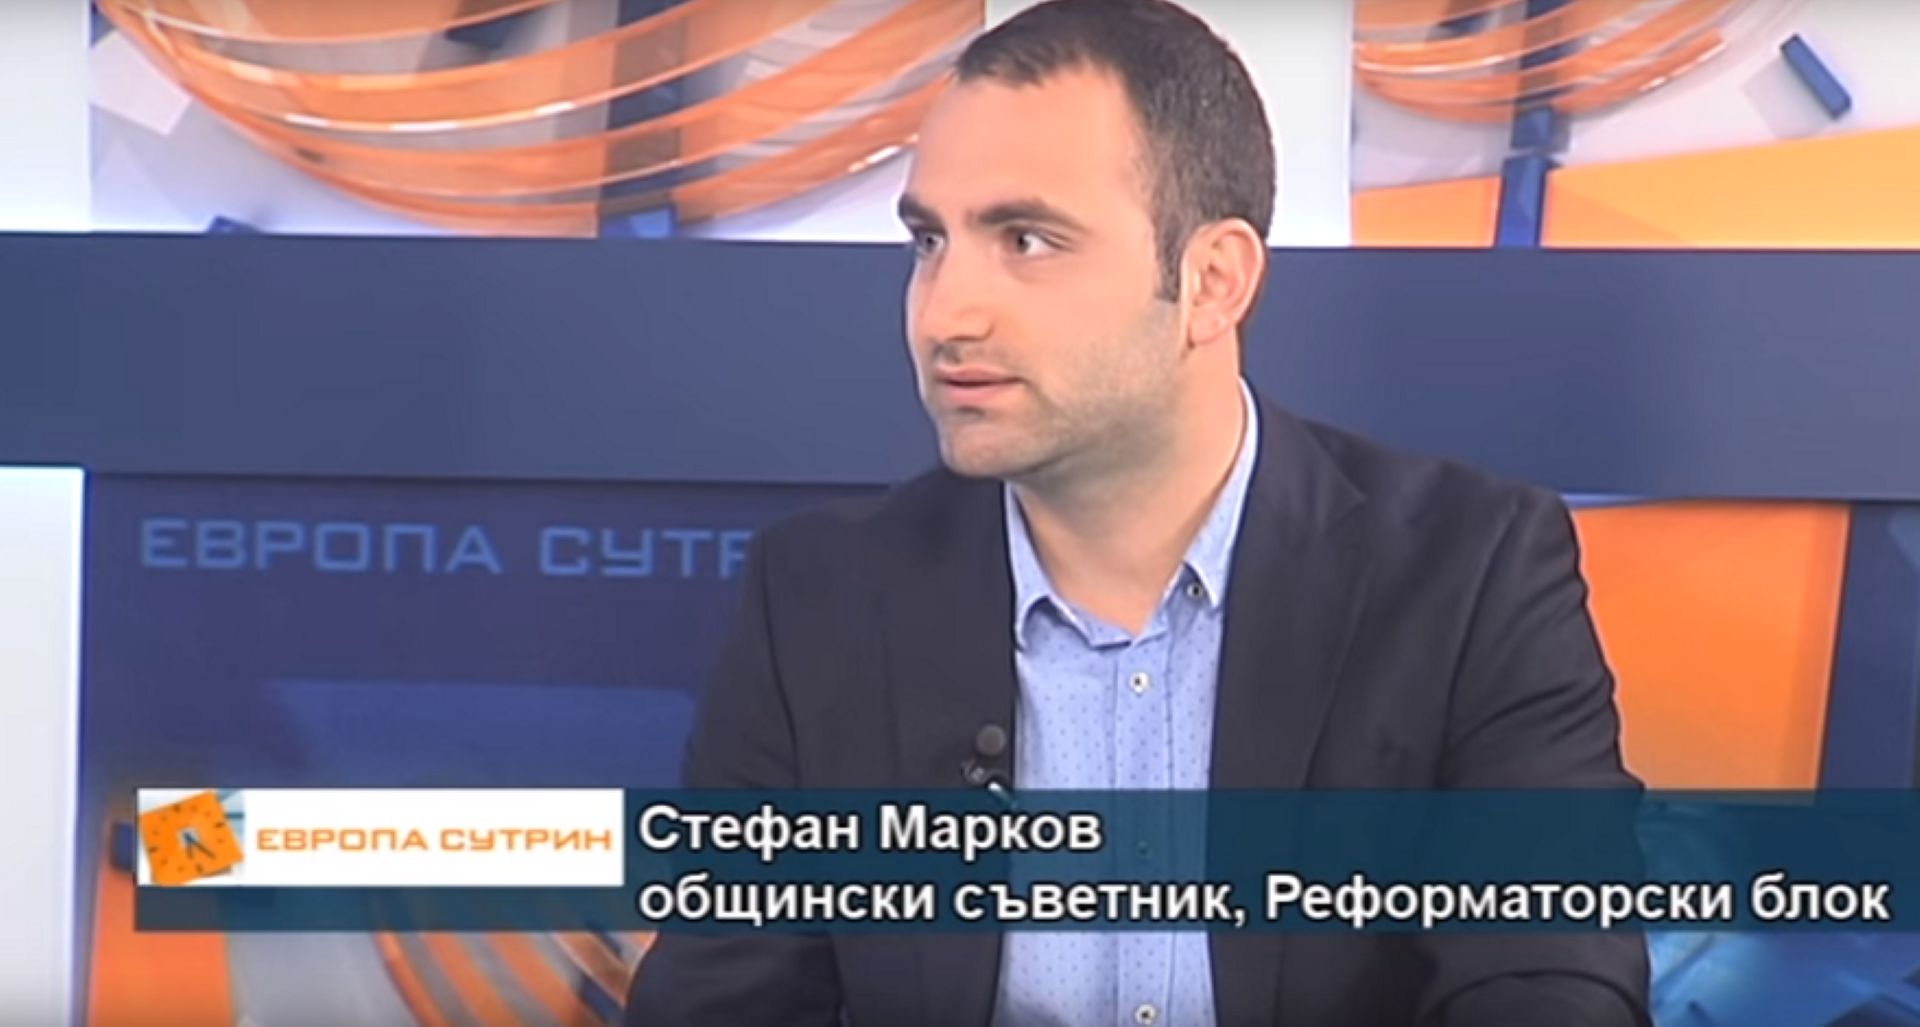 Стефан Марков, общински съветник от РБ 